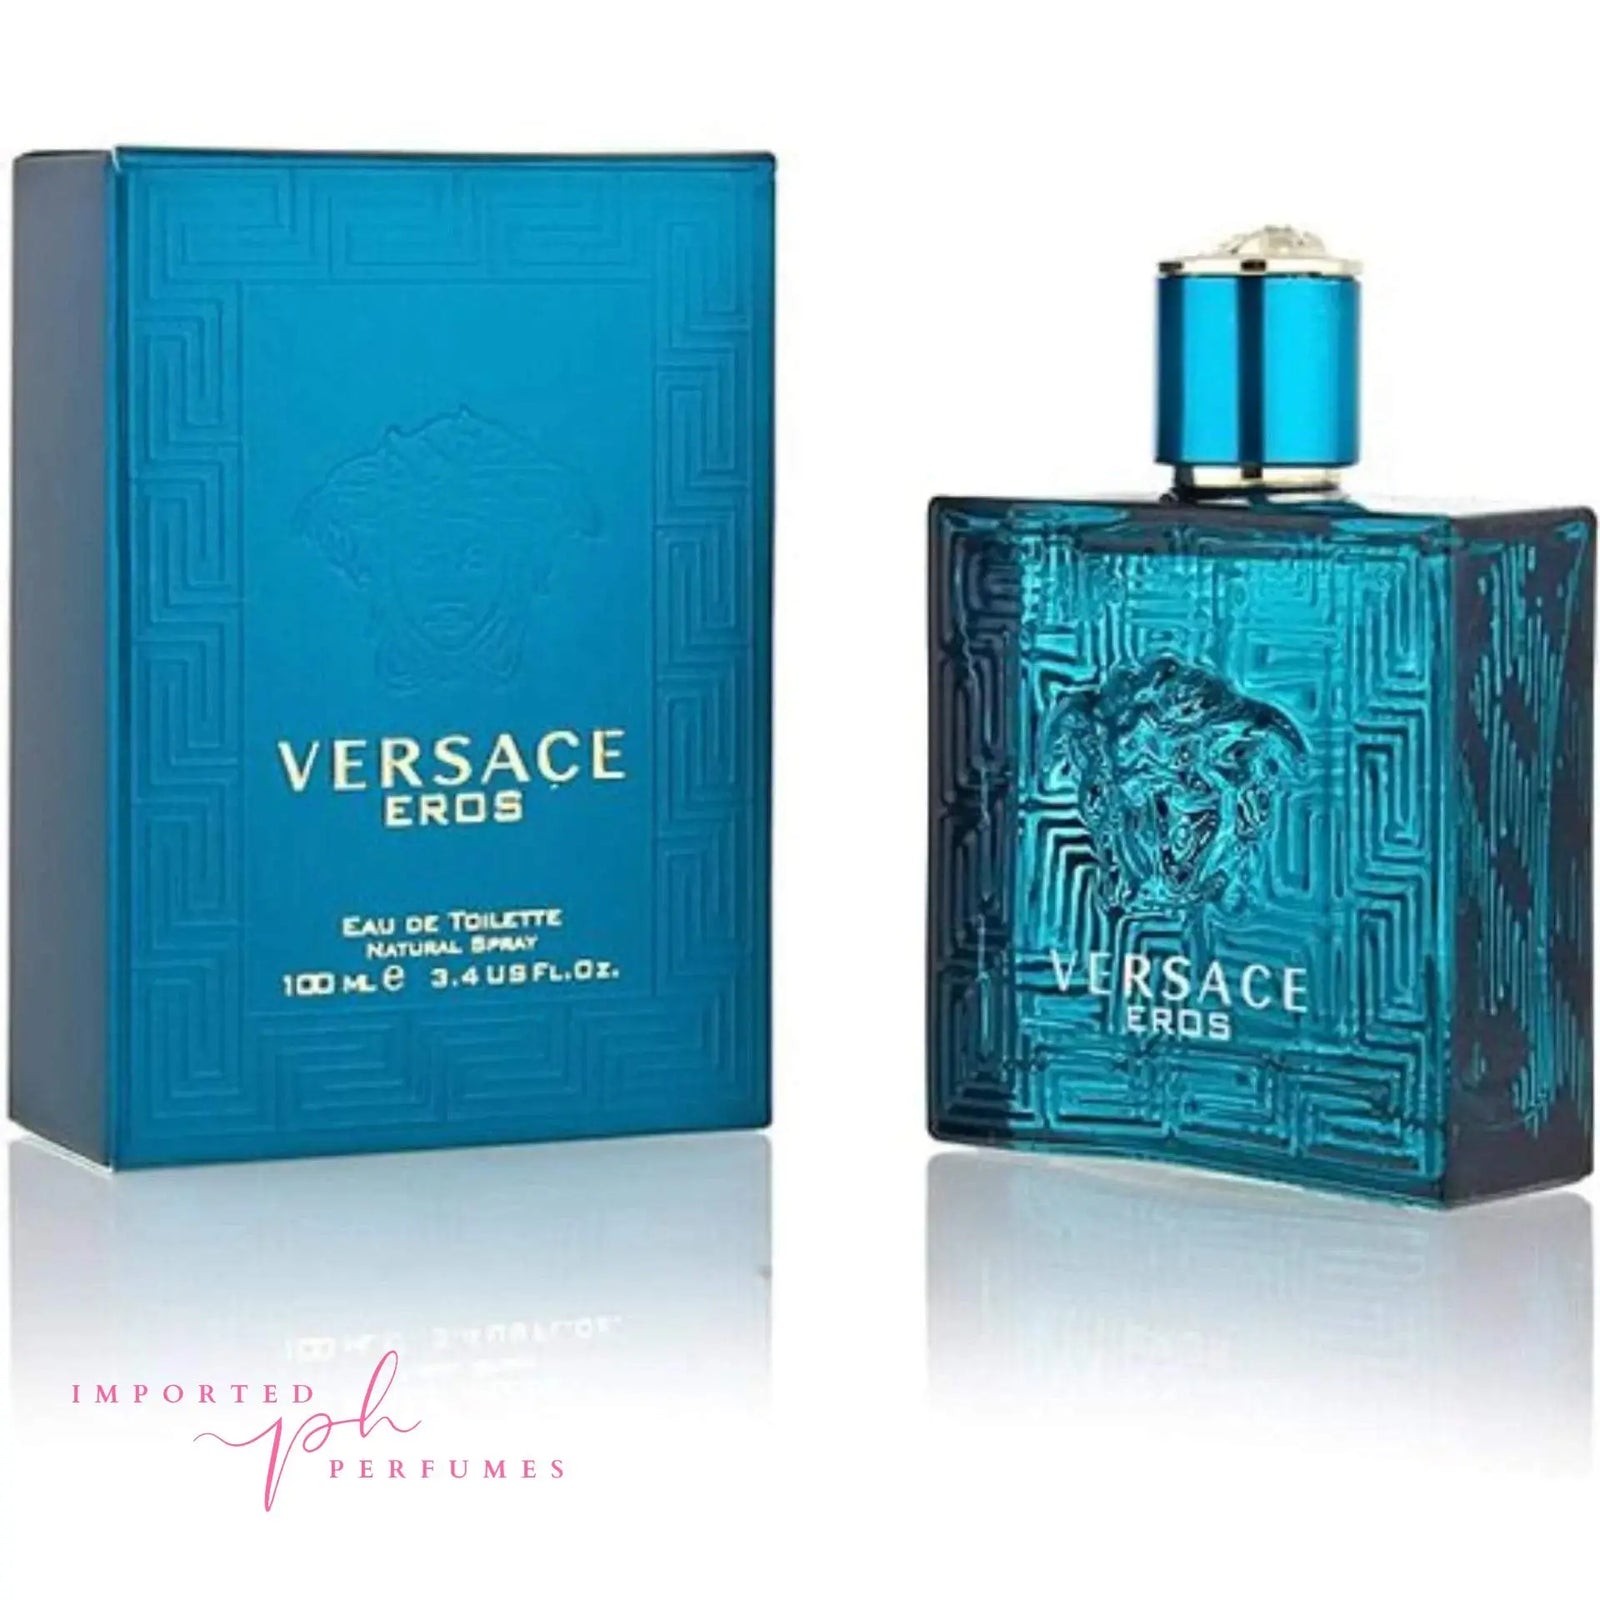 Versace Eros For Men 100ml Eau De Toilette Imported Perfumes Co